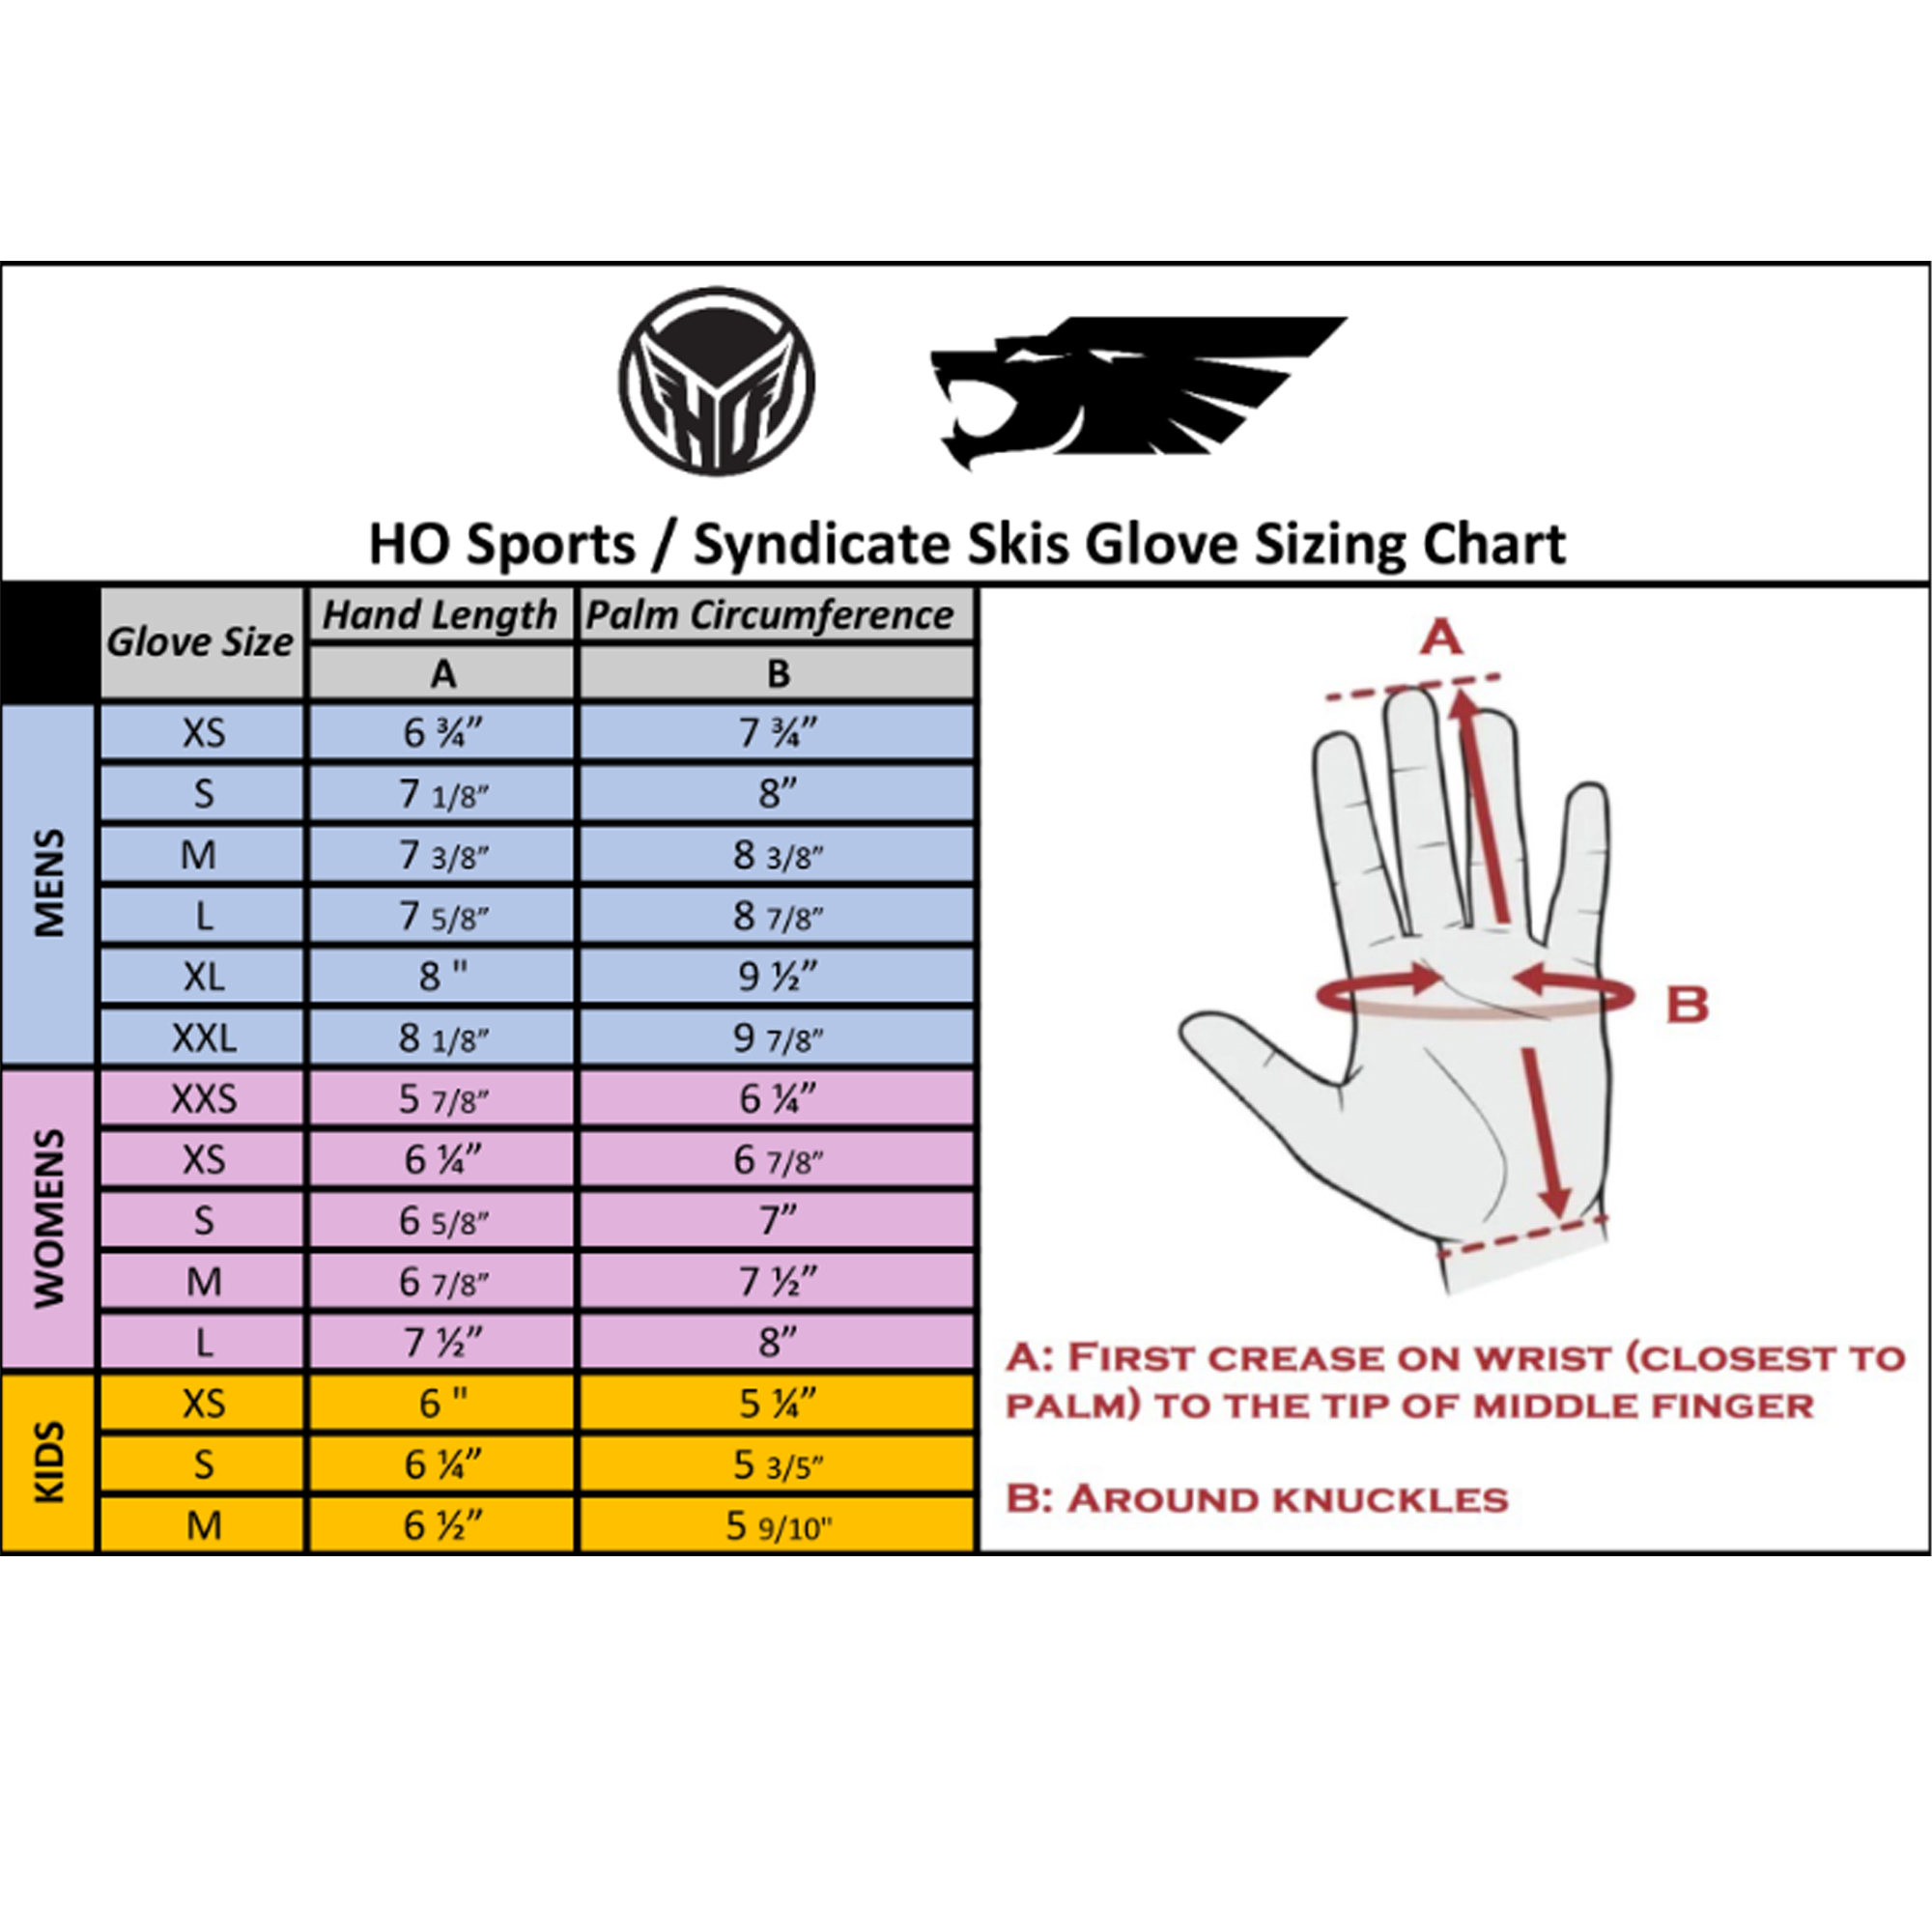 HO Sports Glove Chart (Image) 0 Size Chart